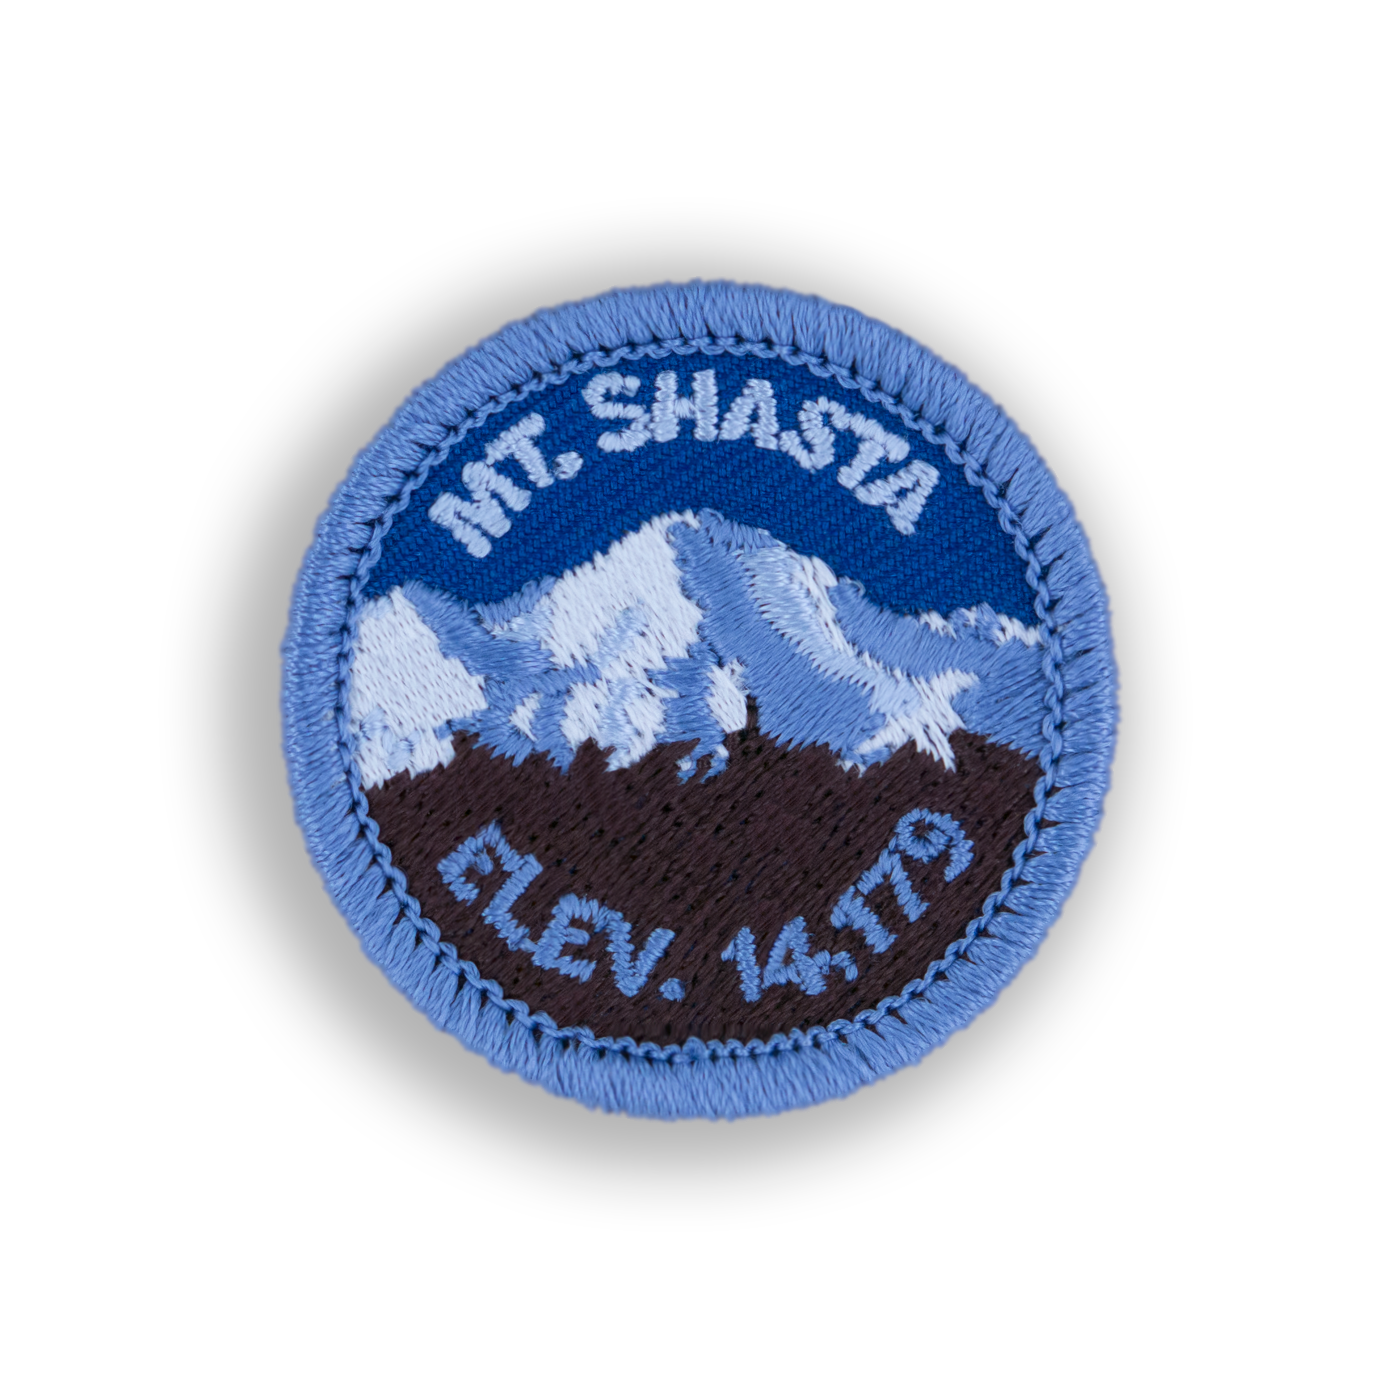 Mount Shasta Patch | Demerit Wear - Fake Merit Badges